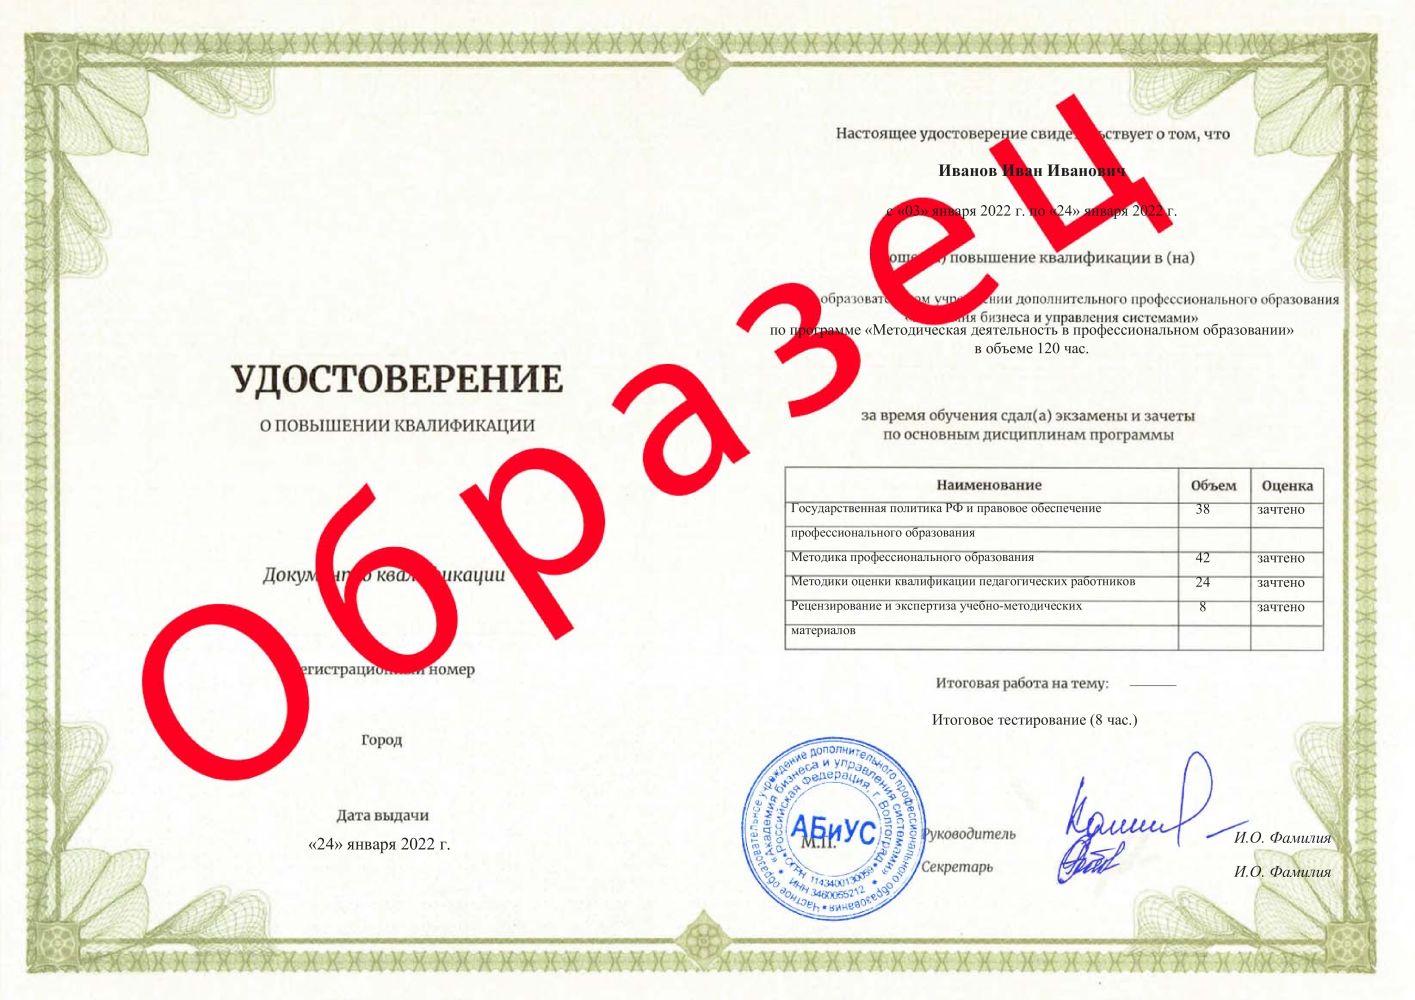 Удостоверение Методическая деятельность в профессиональном образовании 120 часов 3313 руб.